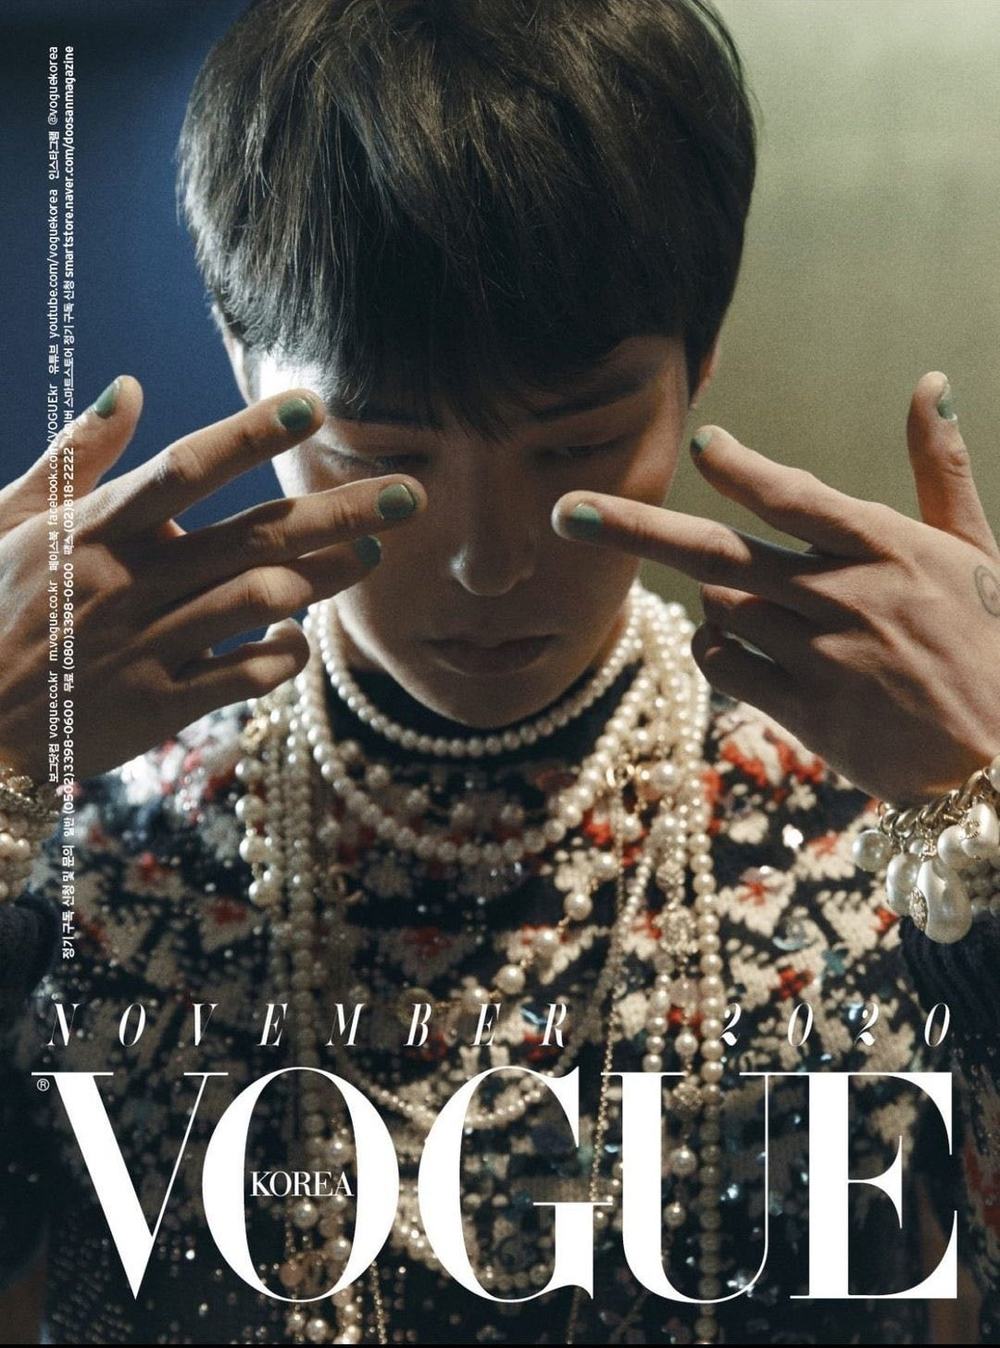 
Tạp chí Vogue với gương mặt ảnh bìa là G-Dragon đang đạt mức bán ra cao ngất ngưỡng. (Ảnh: Instagram)